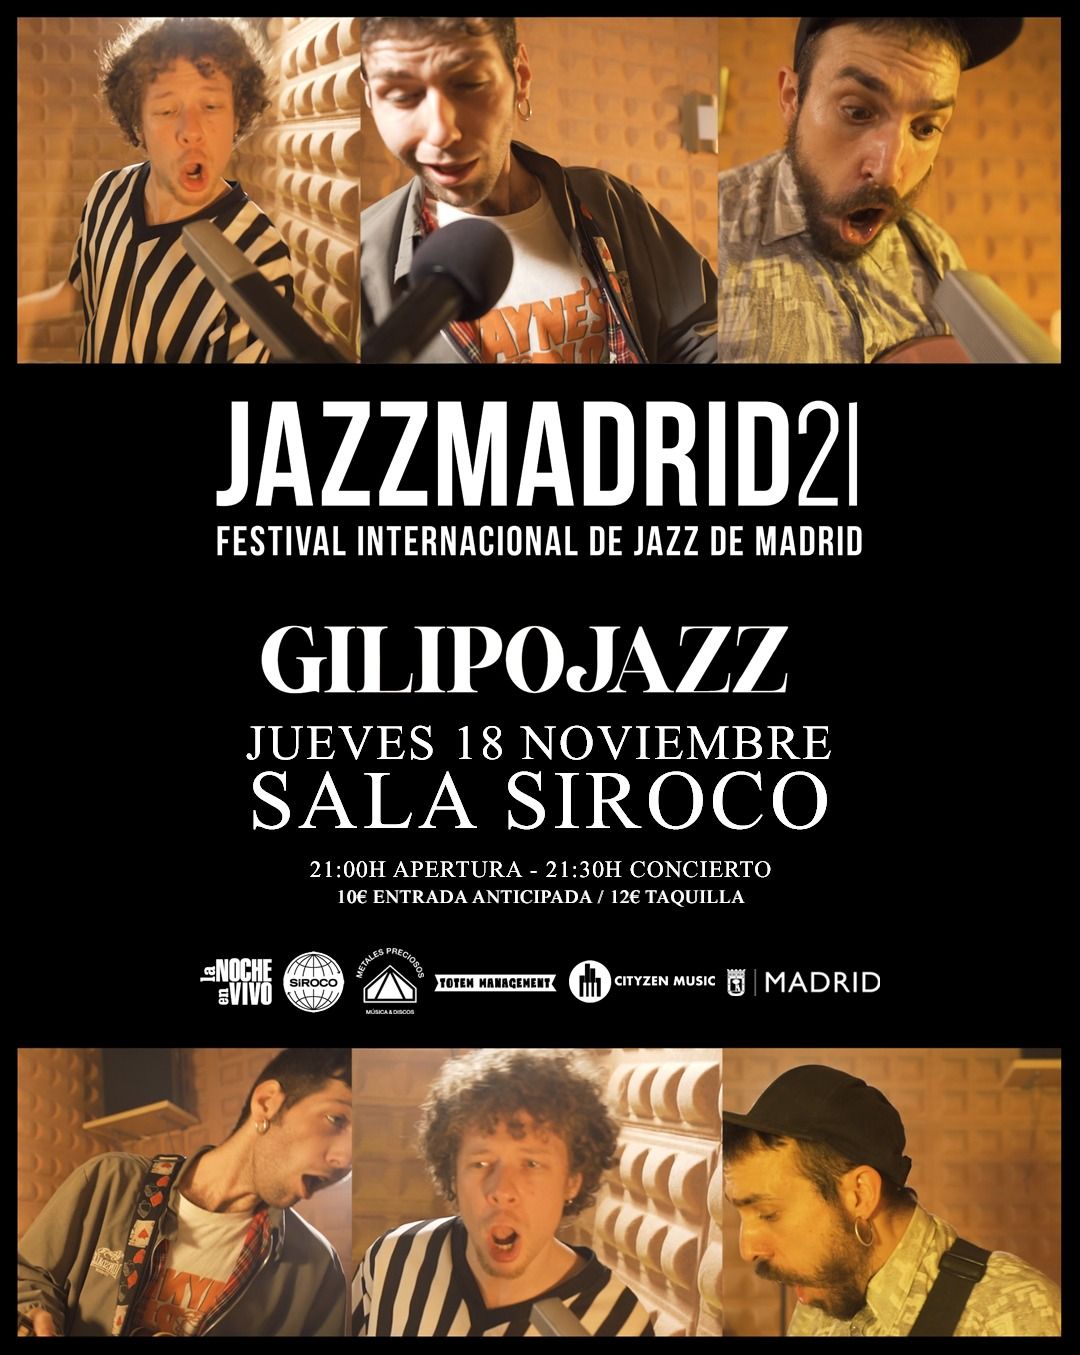 Jazzmadrid presenta: Gilipojazz